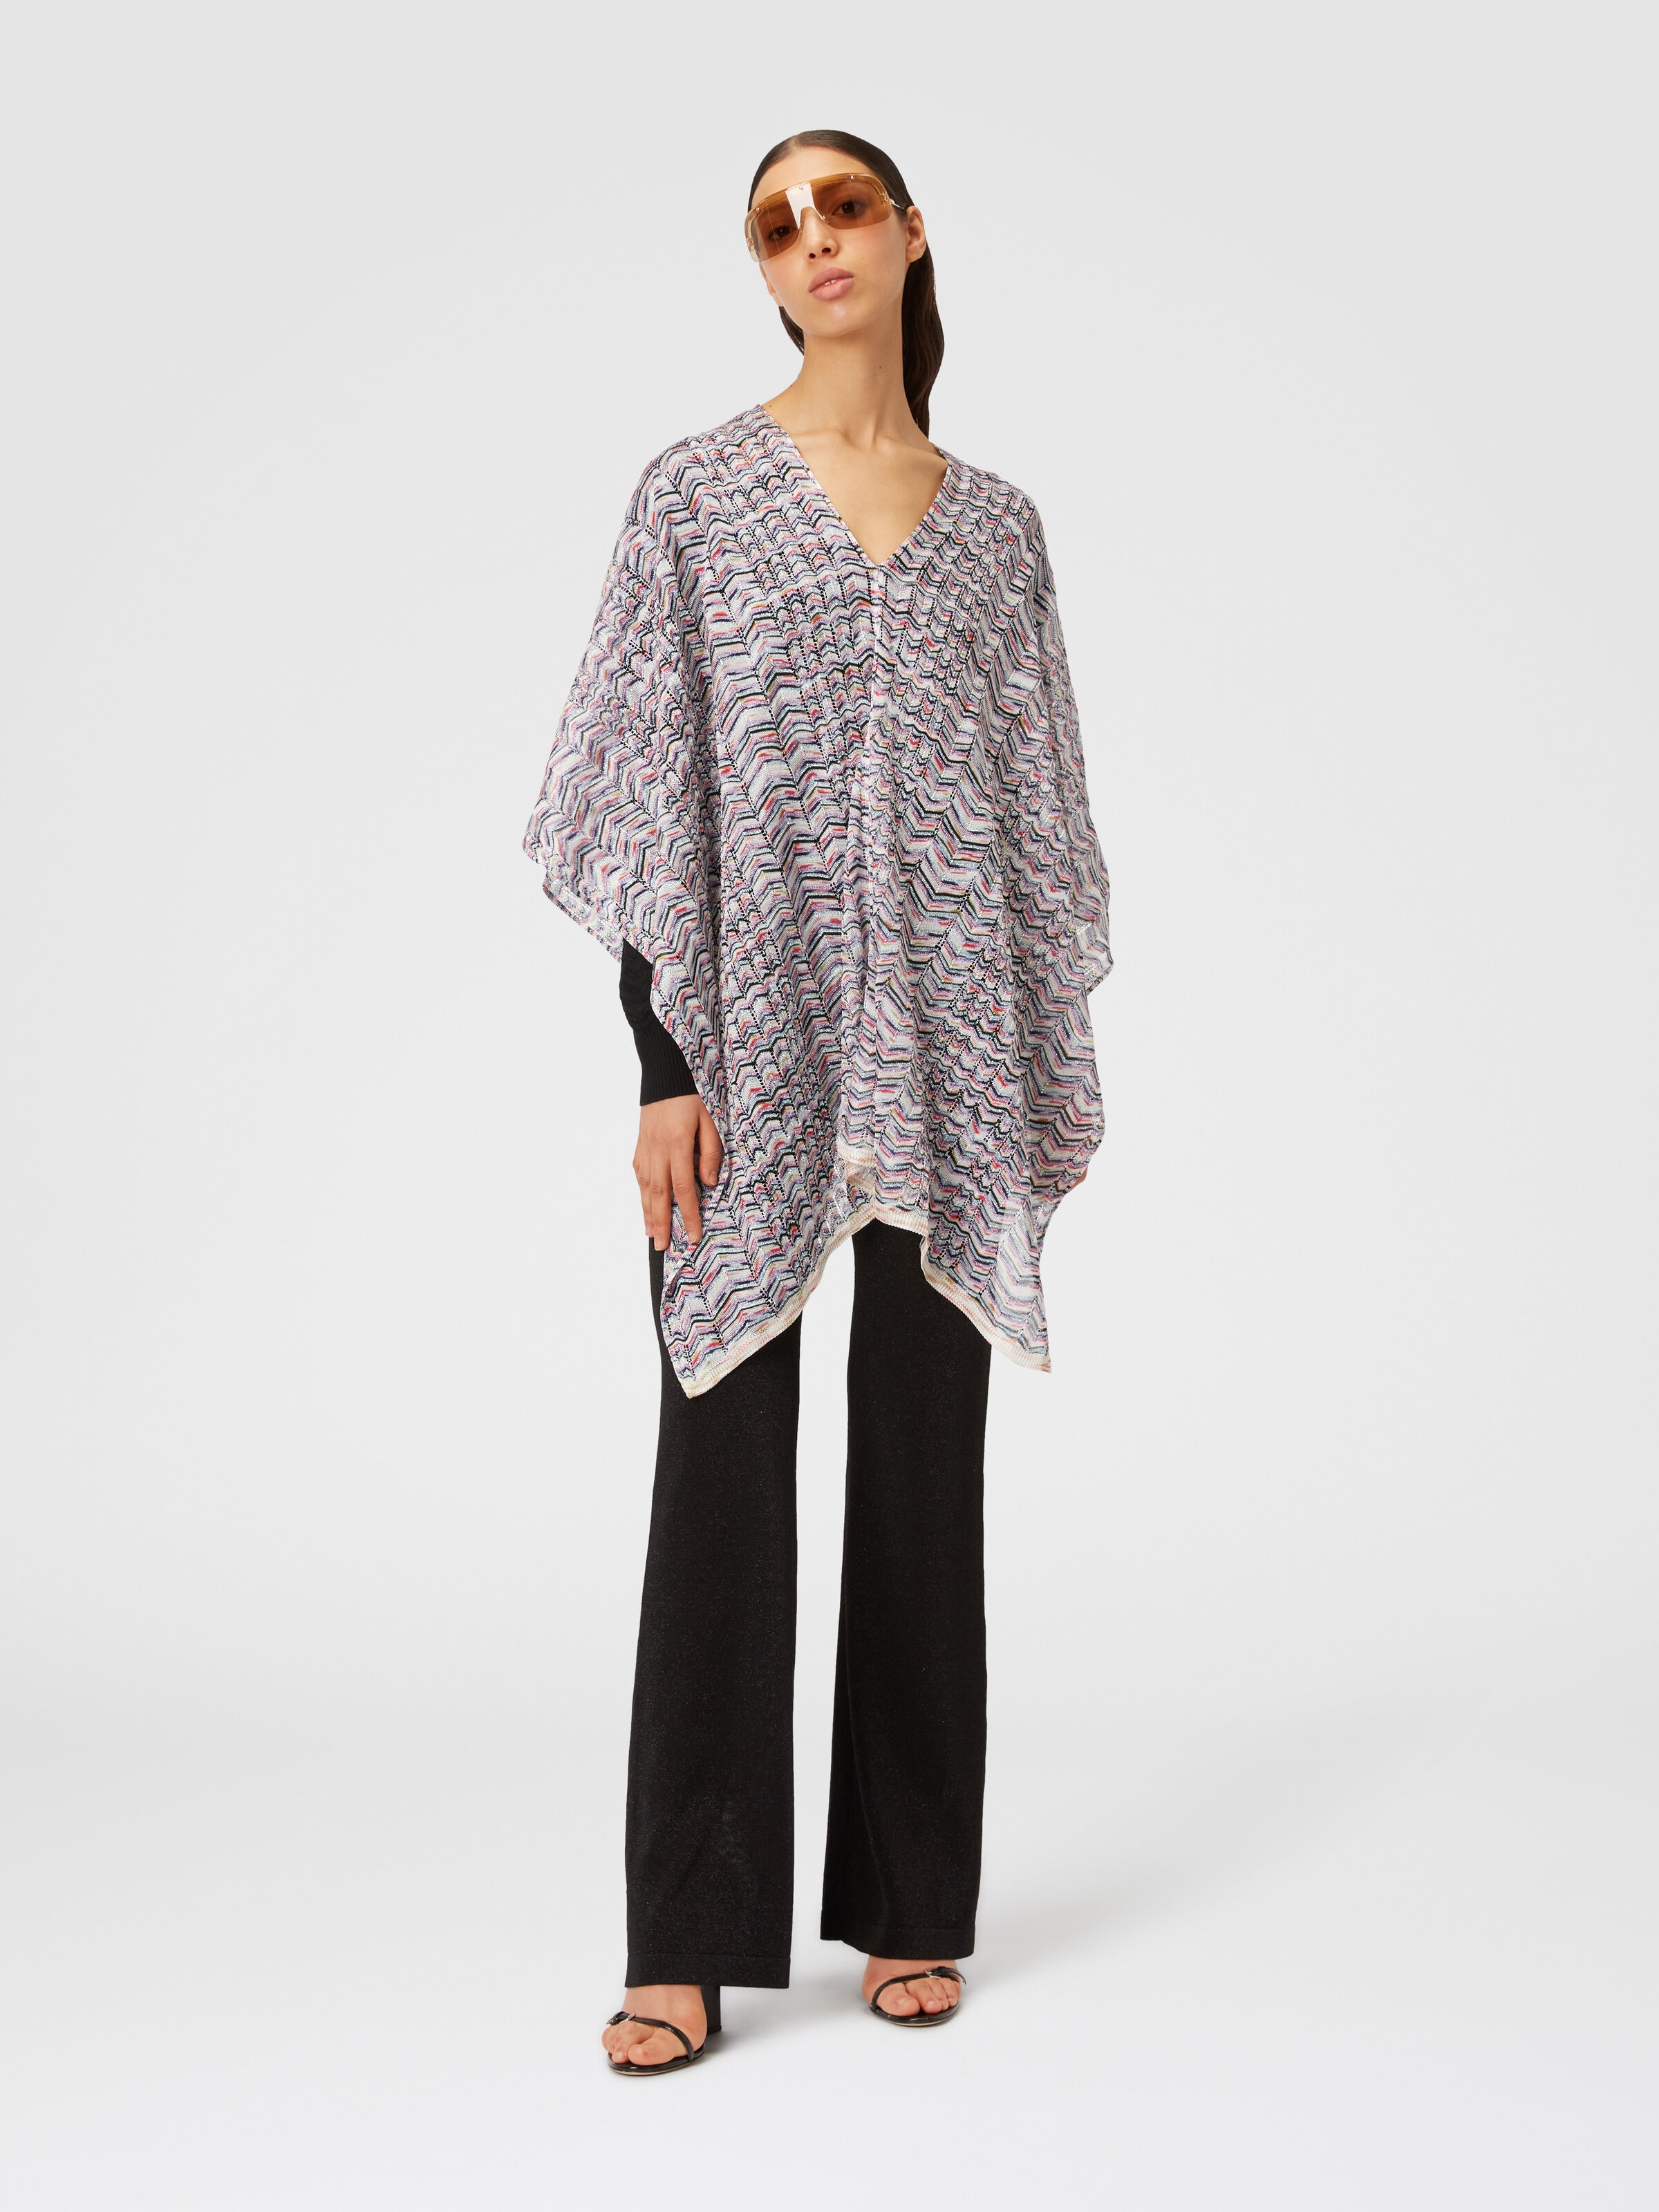 Poncho in viscose and cotton chevron knit, Multicoloured  - 1